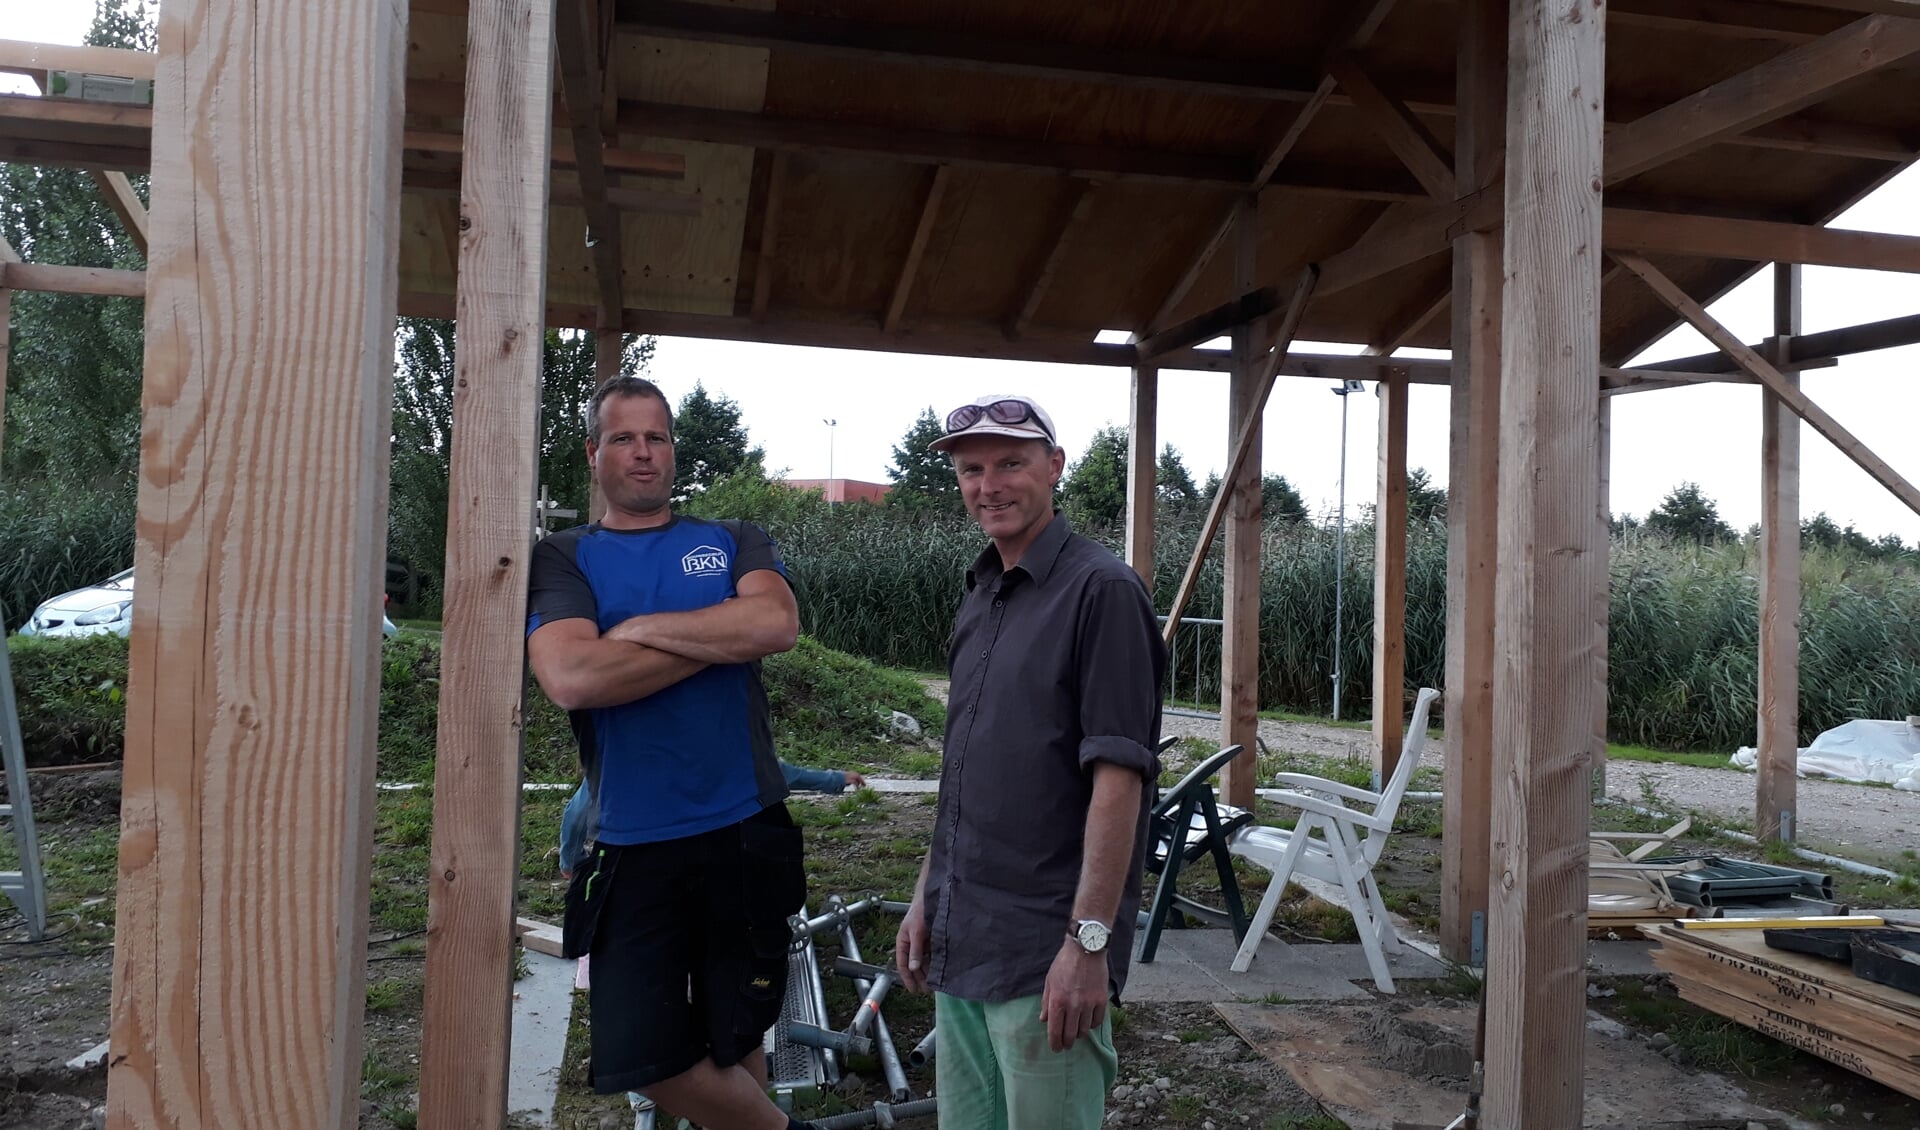 De fundering van de CoHortus staat. Aannemer Kees Nobel (links) en architect Gert Jacob de Graaf (rechts) maken zich op voor de volgende fase.